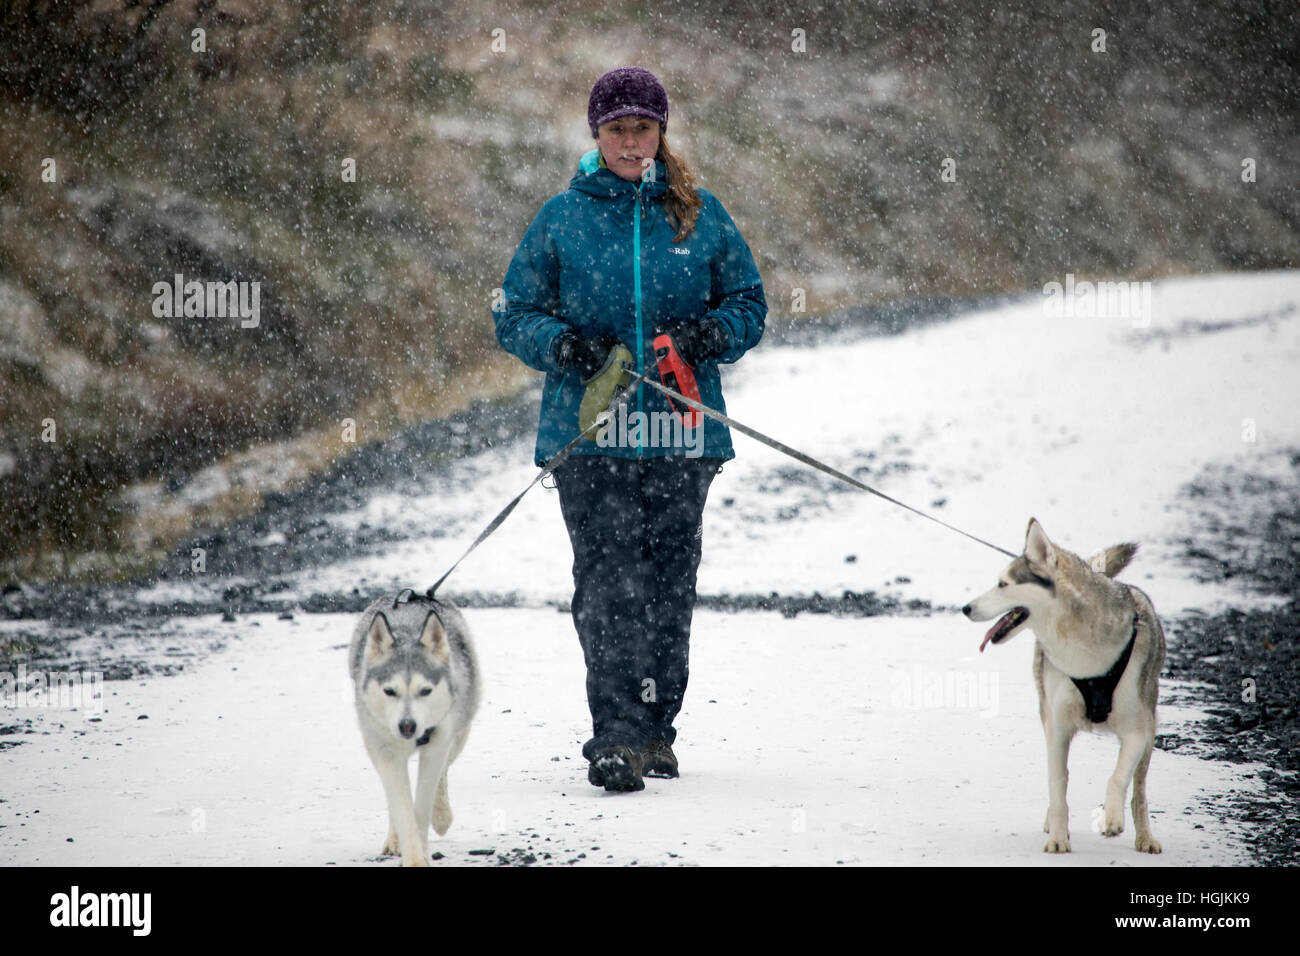 Pays de Galles, Royaume-Uni 22 janvier 2017, le froid et les averses de neige dans certaines parties du pays de Galles d'aujourd'hui. Un marcheur avec deux chiens appréciant les conditions autour du réservoir d'Alwen à Conwy County©/DGDImages Alamy Live News Banque D'Images